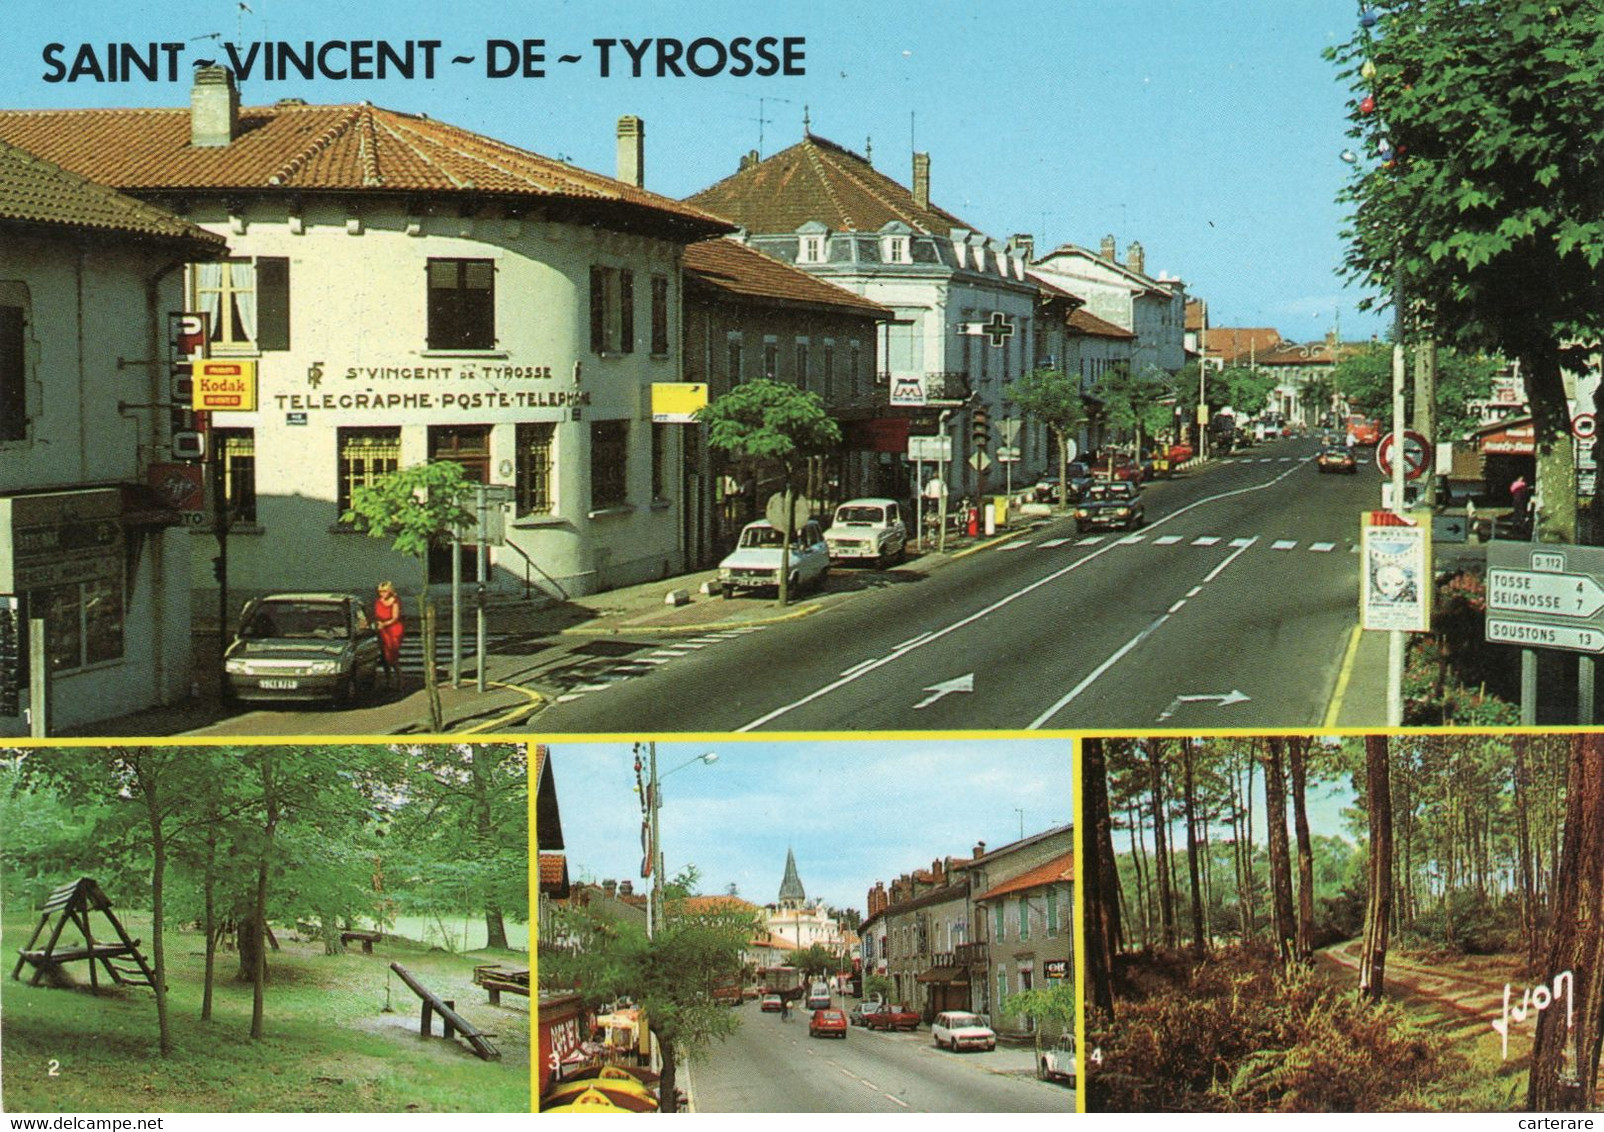 40,LANDES,SAINT VINCENT DE TYROSSE,TELEGRAPHE,POSTE - Saint Vincent De Tyrosse